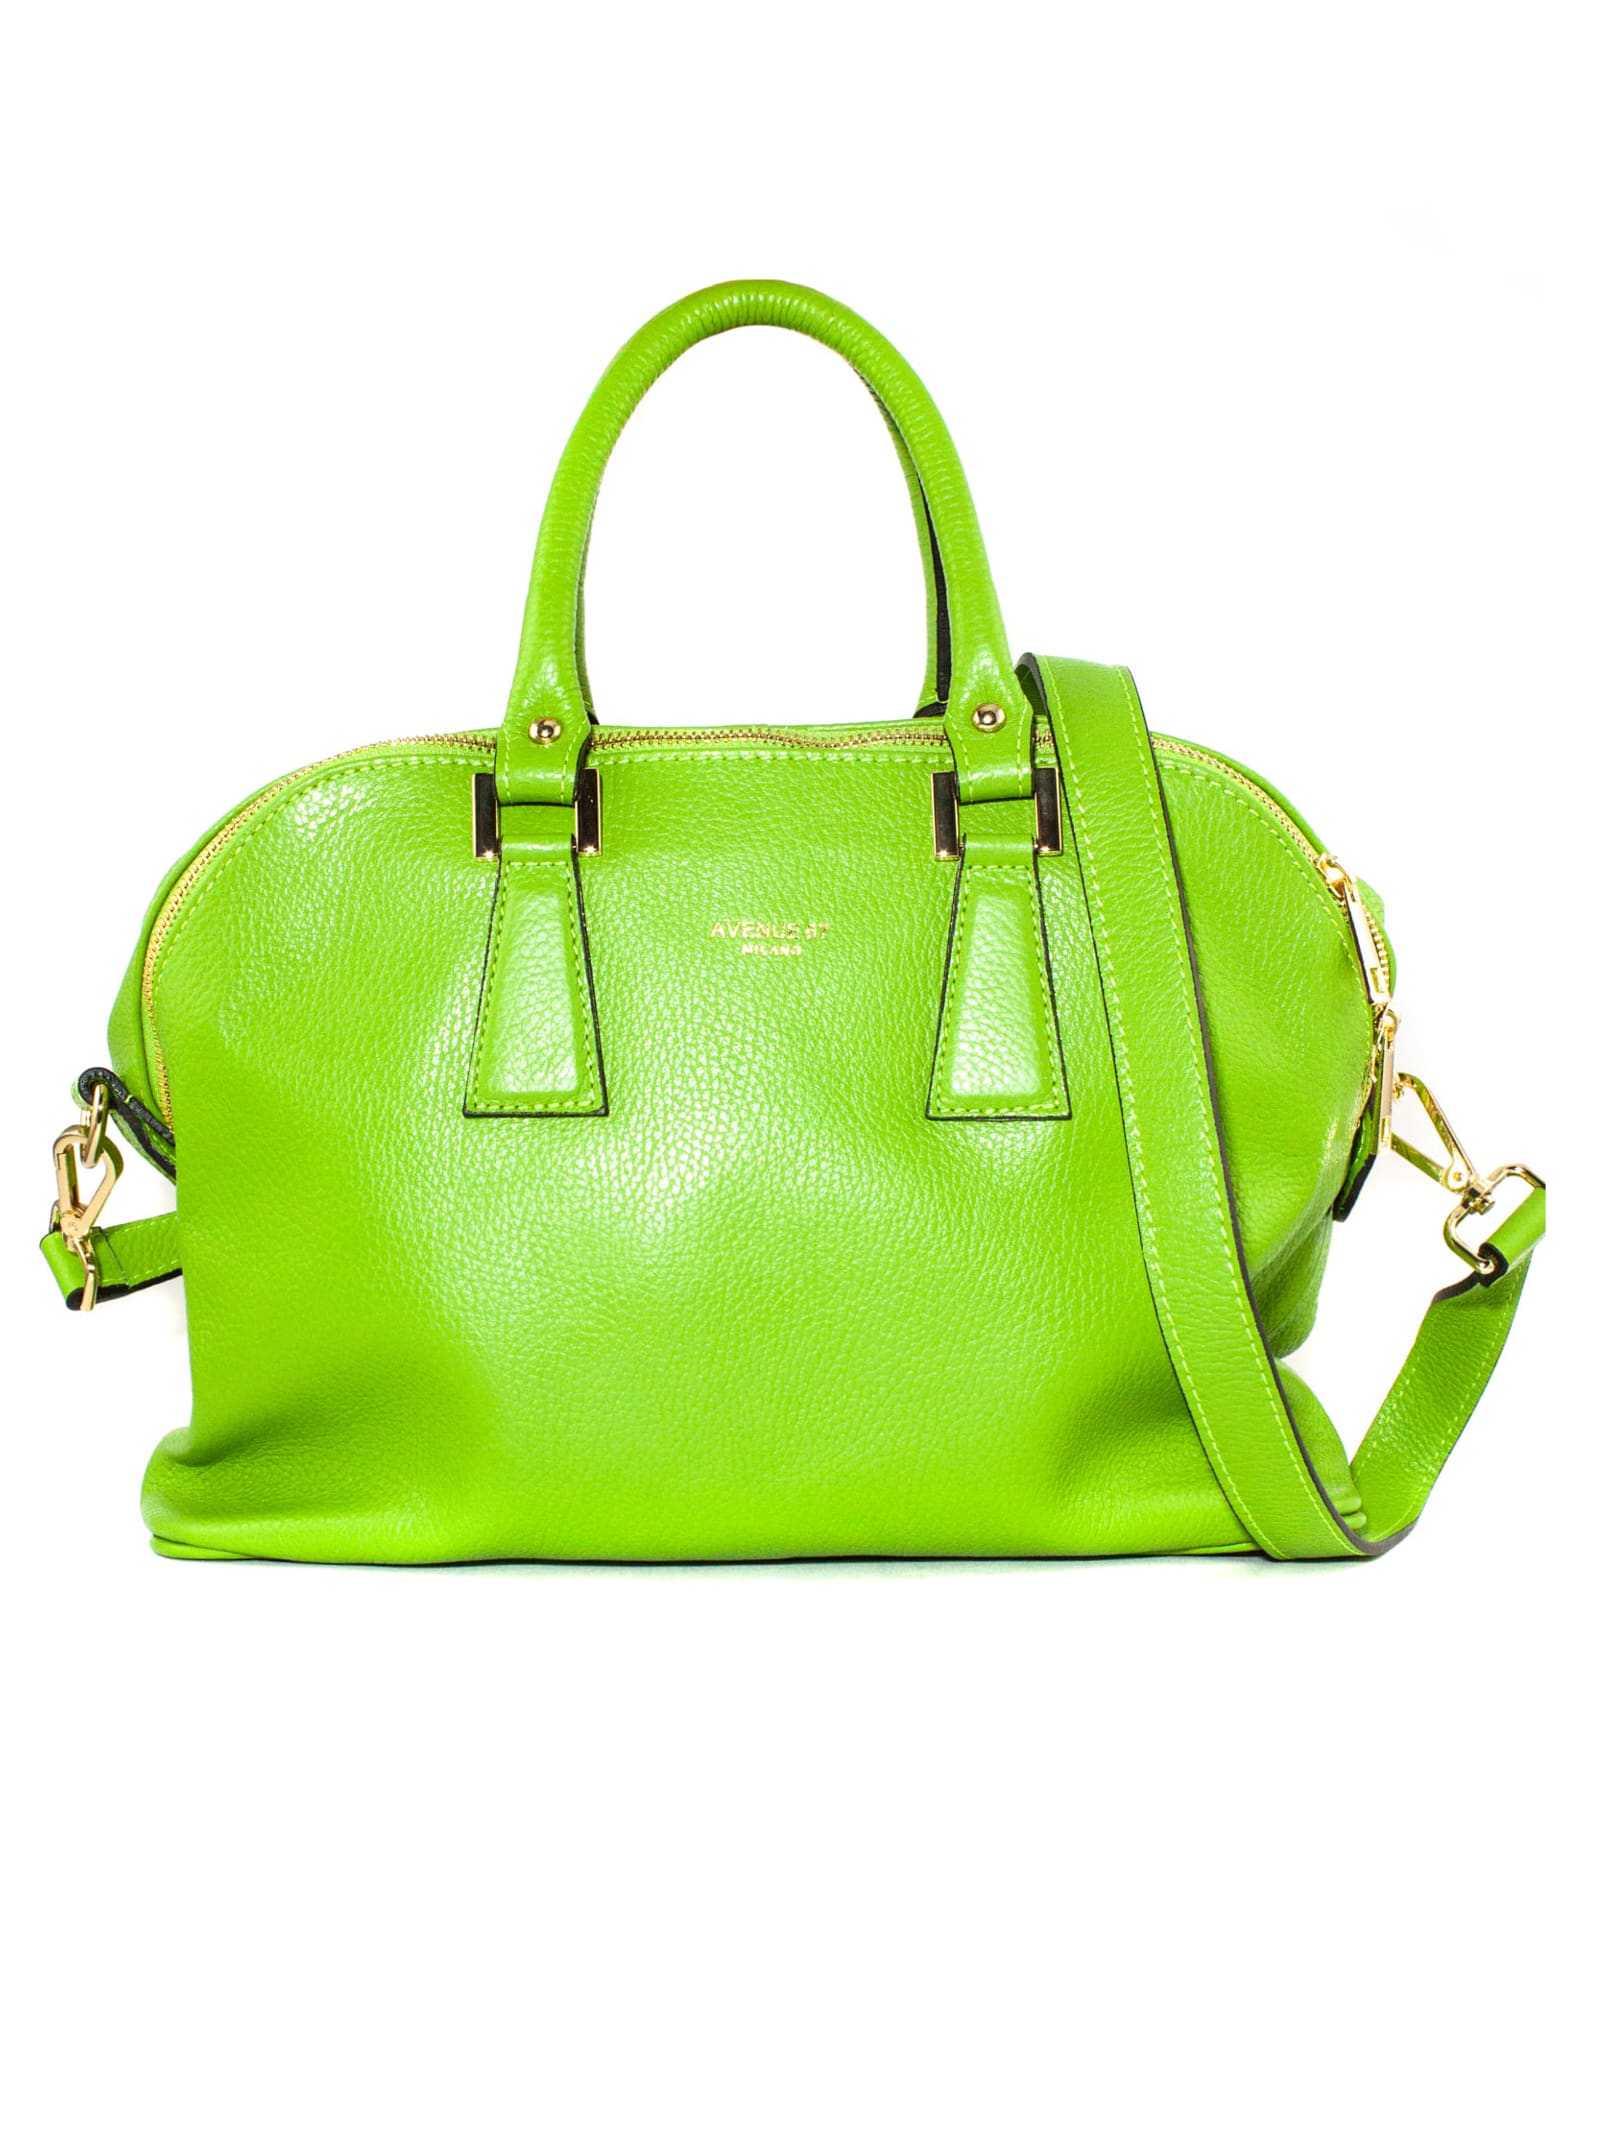 Avenue 67 Green Leather Fandango Xs Bag In Verde